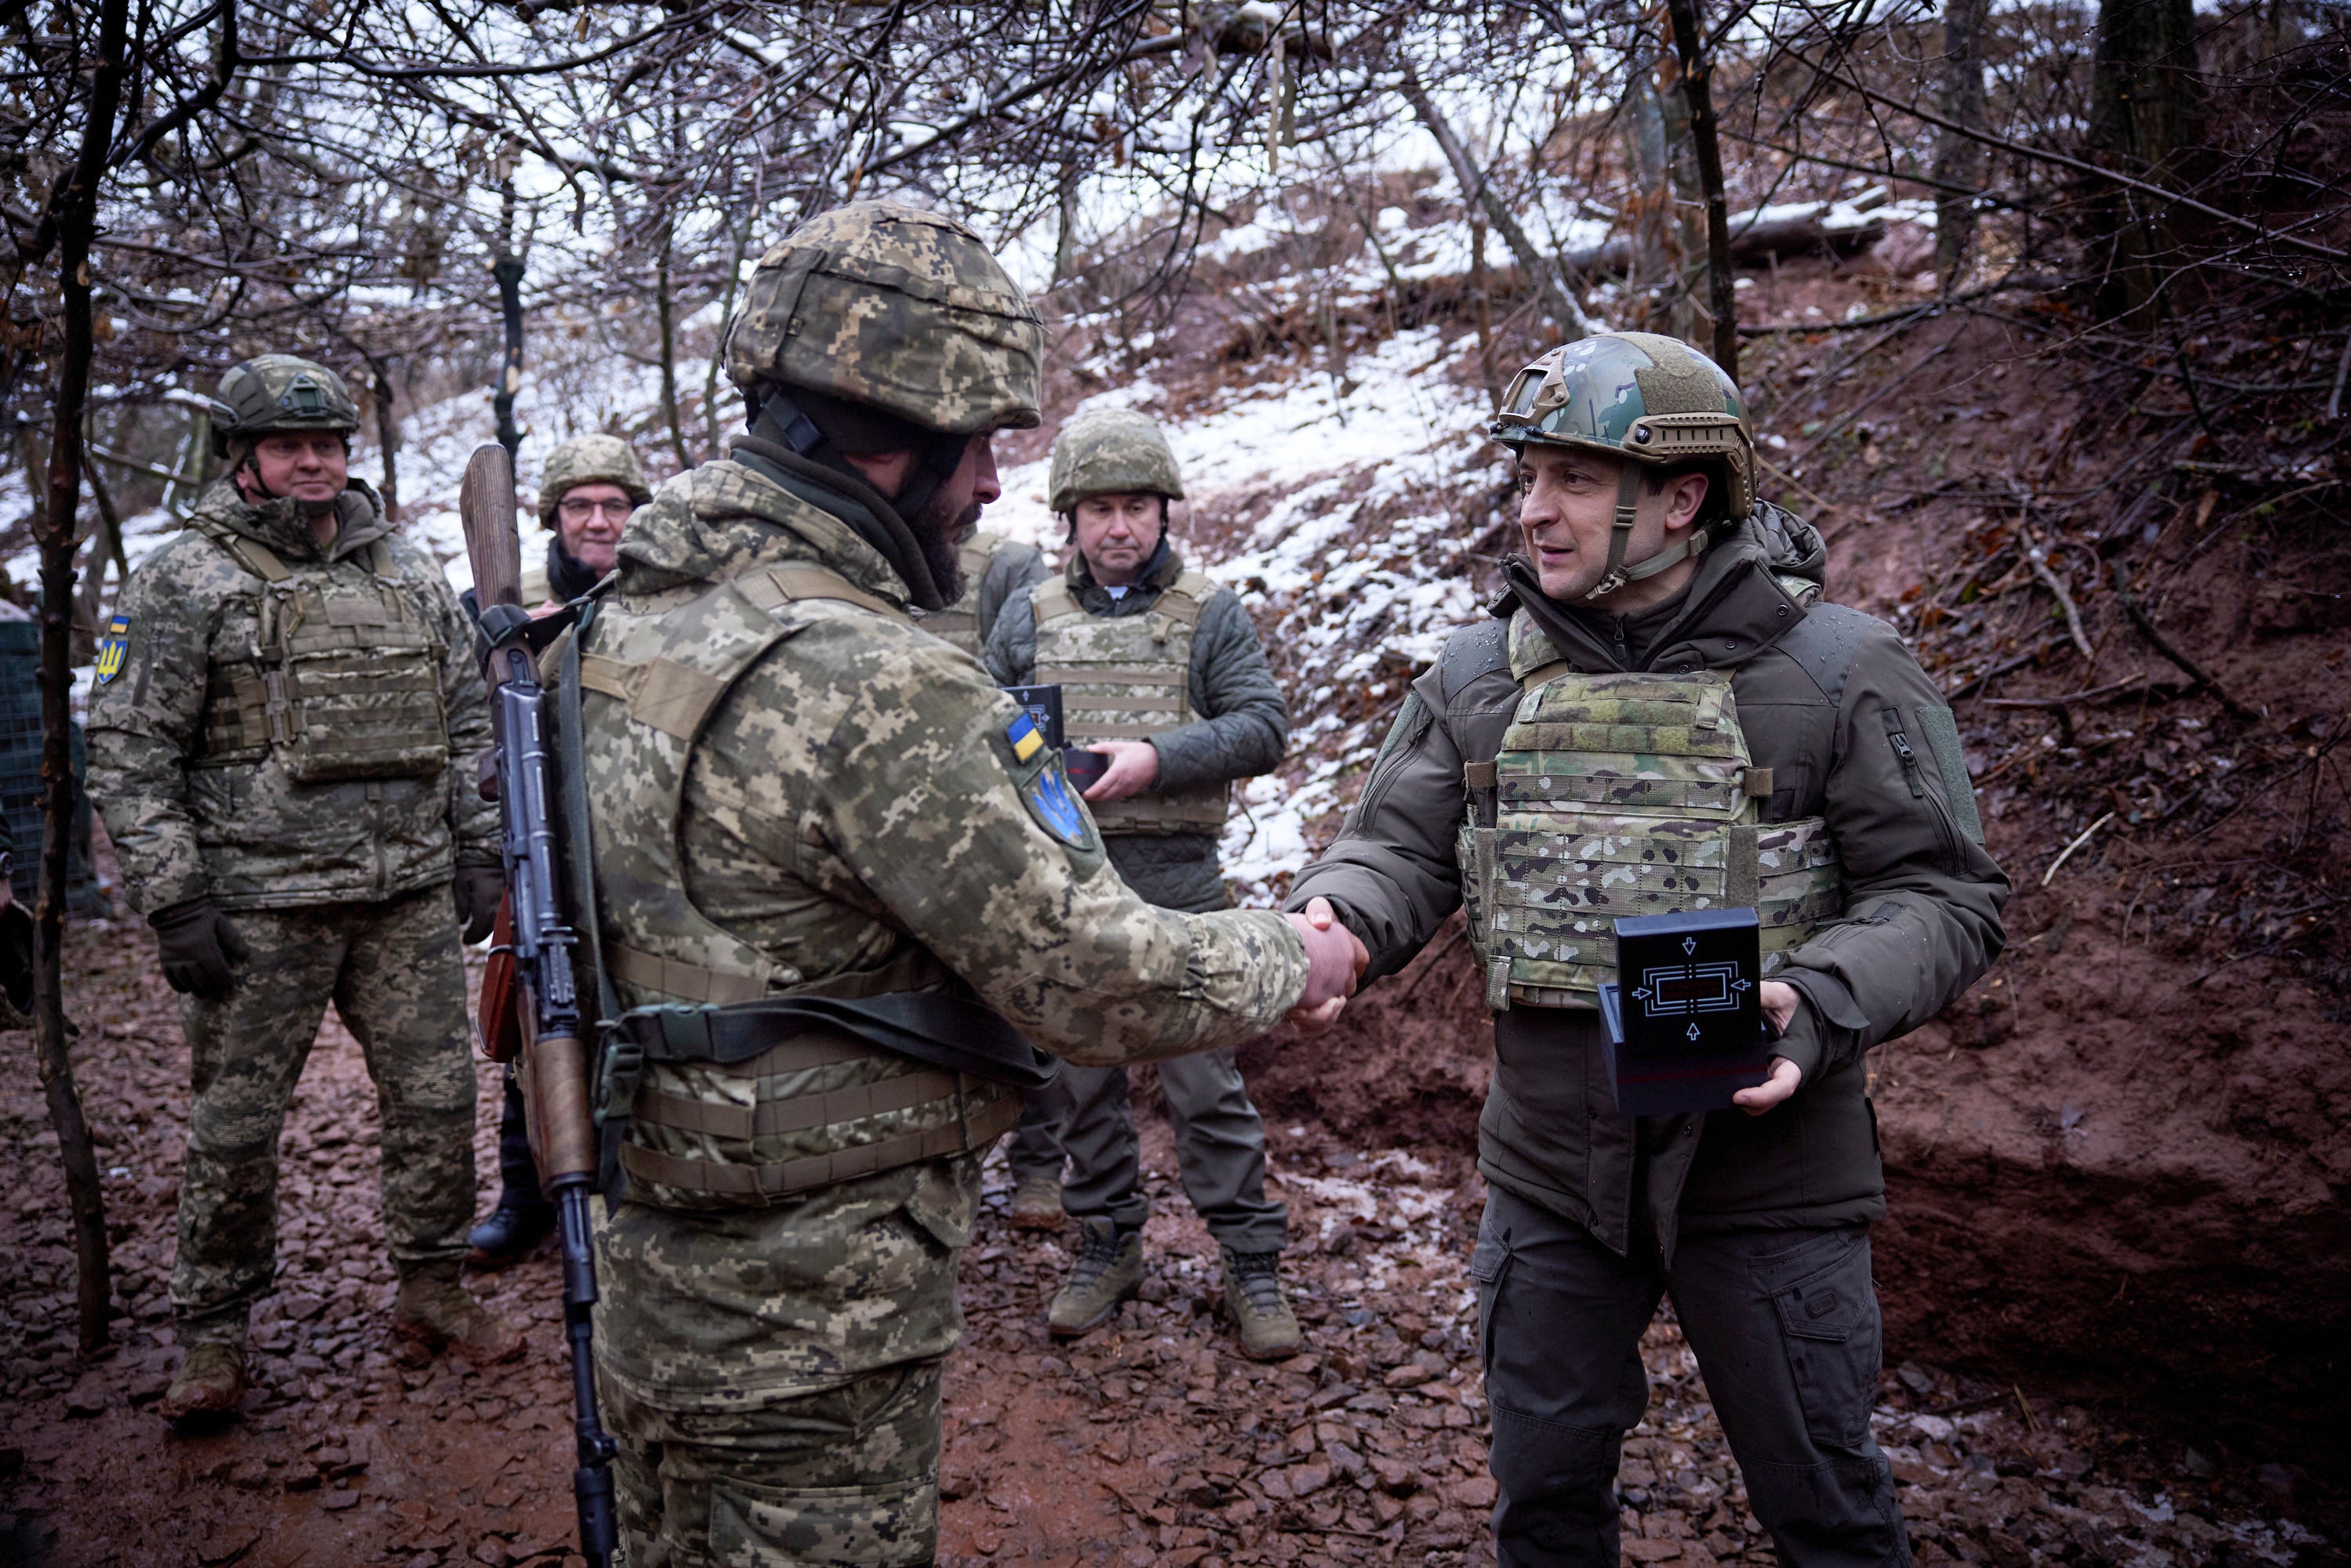 El presidente ucraniano Volodymyr Zelenskyy, a la derecha, premia a un soldado en una trinchera mientras visita la región de Donetsk, en el este de Ucrania, golpeada por la guerra, el lunes 6 de diciembre de 2021. (Oficina de Prensa de la Presidencia de Ucrania vía AP)